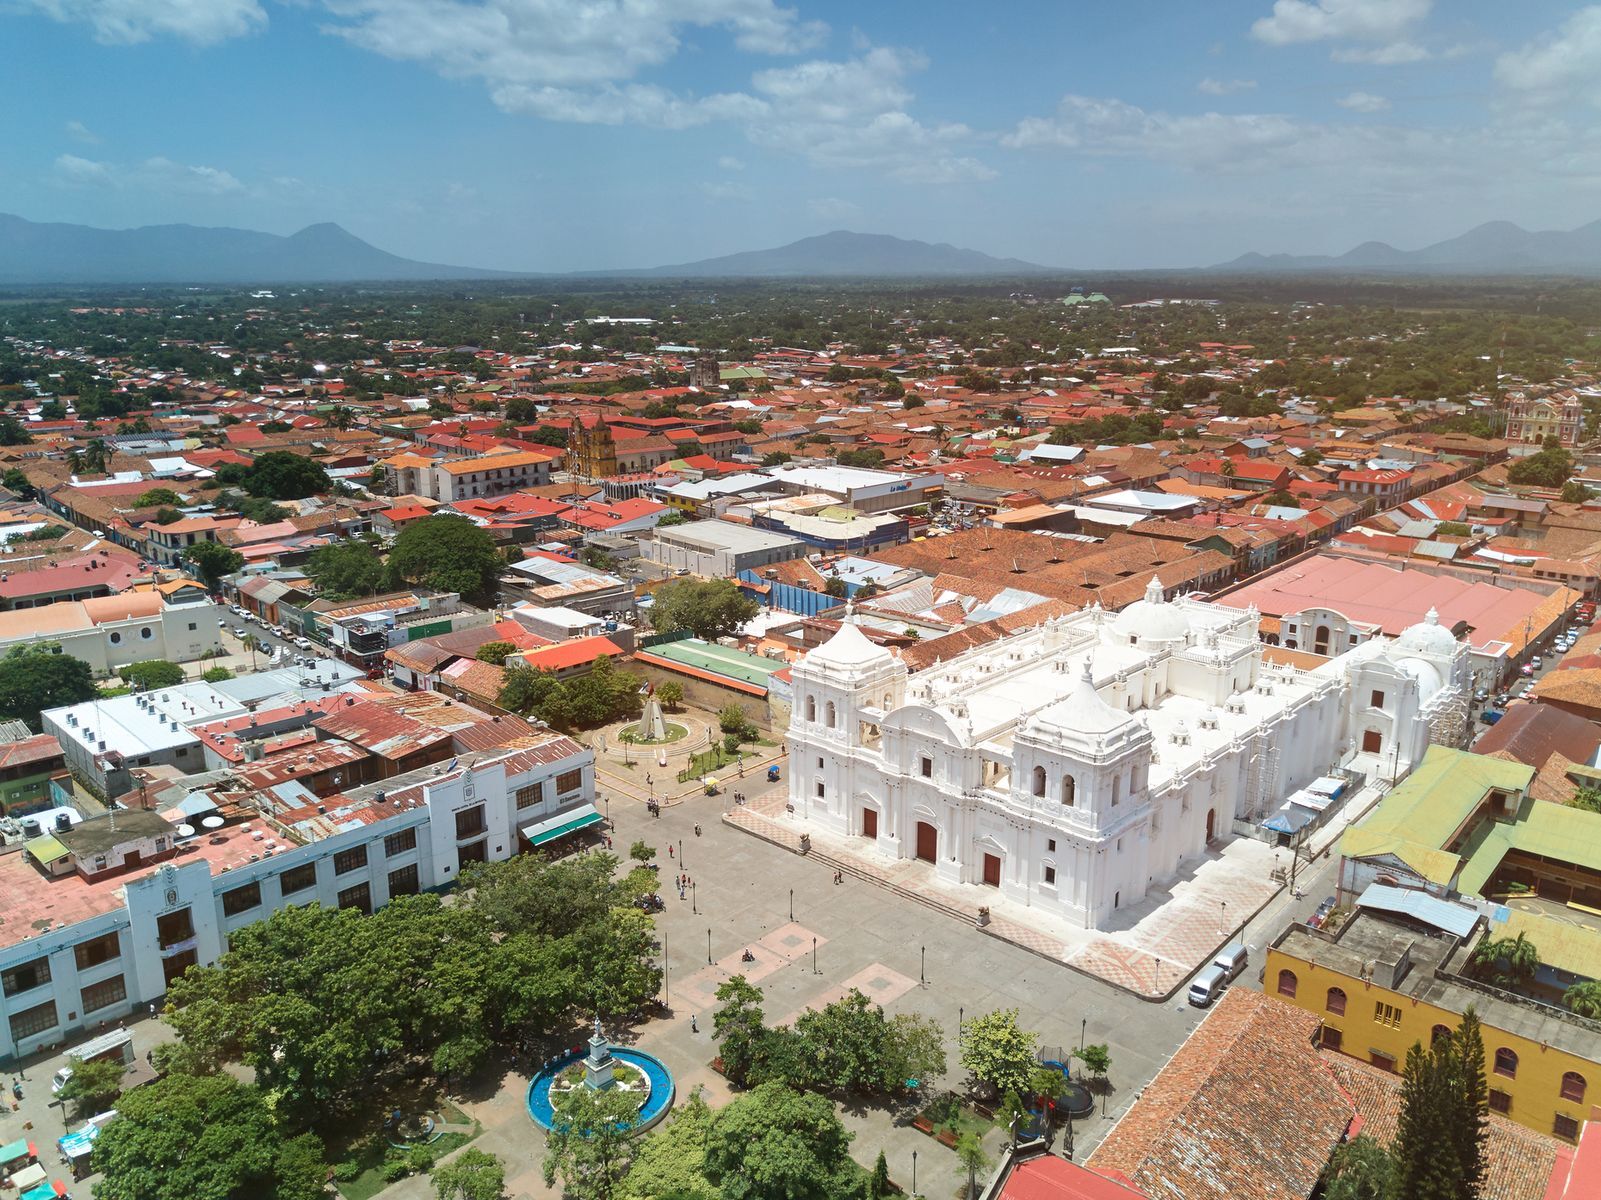 <p>La ville de León, au Nicaragua, se situe à proximité de plusieurs <a href="https://www.voyage-nicaragua.com/leon-nicaragua/les-volcans-de-leon">volcans</a> qui façonnent son panorama unique. Plus calme que la capitale du pays (Managua), elle offre tout de même aux touristes une <a href="https://passporterapp.com/fr/blog/nicaragua/que-faire-leon-nicaragua/">multitude d’activités</a>, à commencer par la visite de ses nombreux bâtiments religieux. Vous apprécierez l’architecture de l’église La Recolección et de la cathédrale de León. Entre deux visites, le <a href="https://www.batidospitaya.com/menu">restaurant Pitaya</a> saura vous rafraîchir avec ses batidos (frappés aux fruits) variés. Pour voir un peu plus du pays, vous pouvez vous rendre aux ruines de <a href="https://whc.unesco.org/fr/list/613">León Viejo</a>, à environ une heure de la cité, où vous découvrirez les vestiges des premiers bâtiments construits après l’arrivée des Européens pour environ <a href="https://www.visitleon.info/ruinas-leon-viejo.html">5 $US</a>.</p>